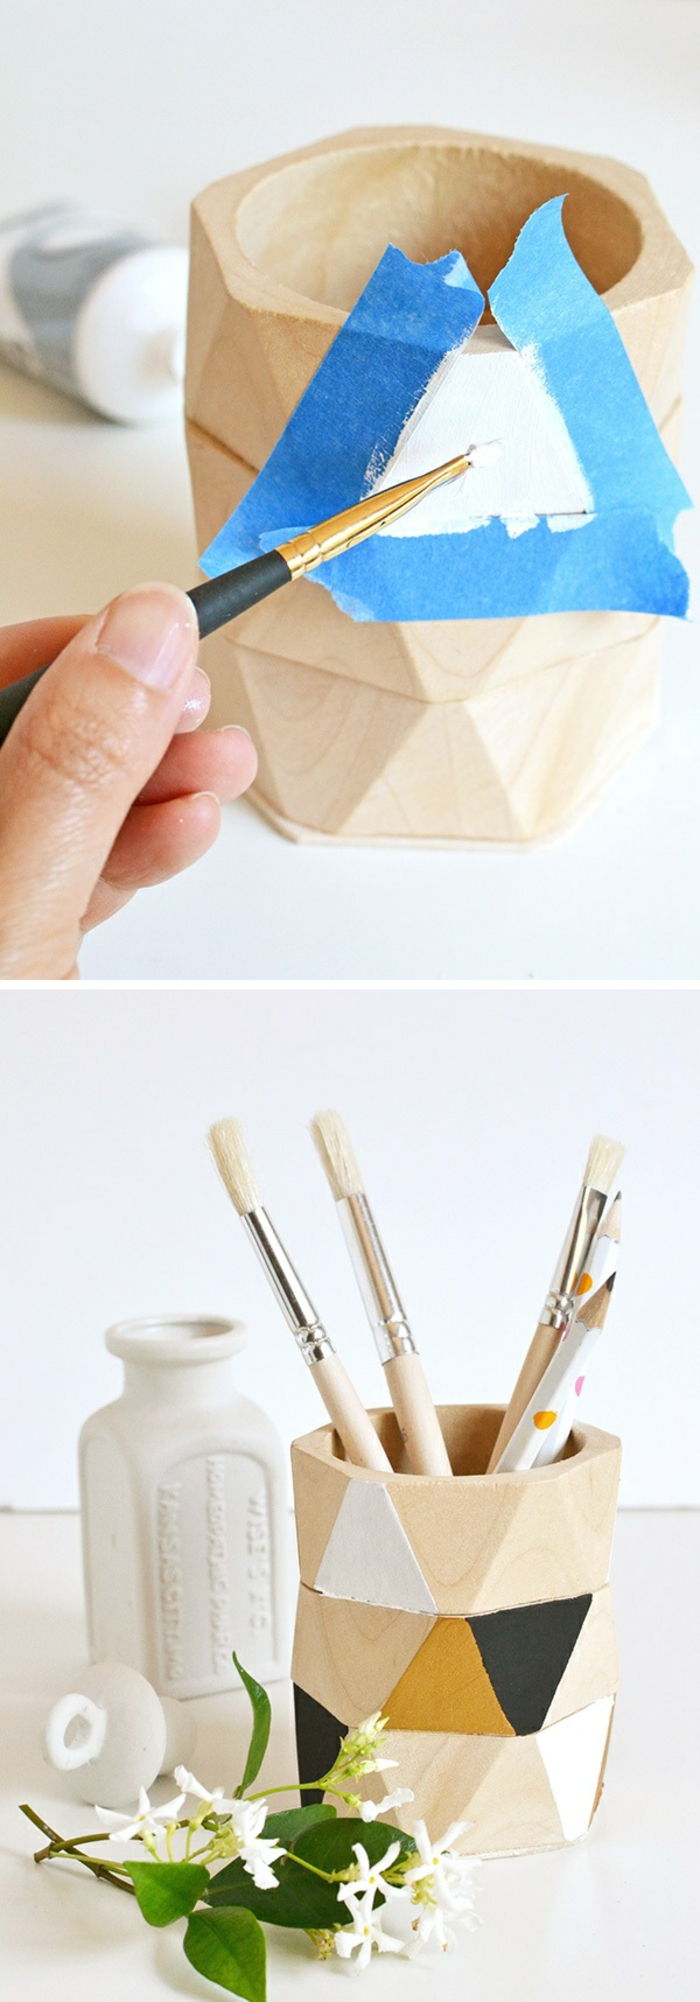 fazer e decorar os próprios suportes de lápis de madeira, fita adesiva, tinta, escovas